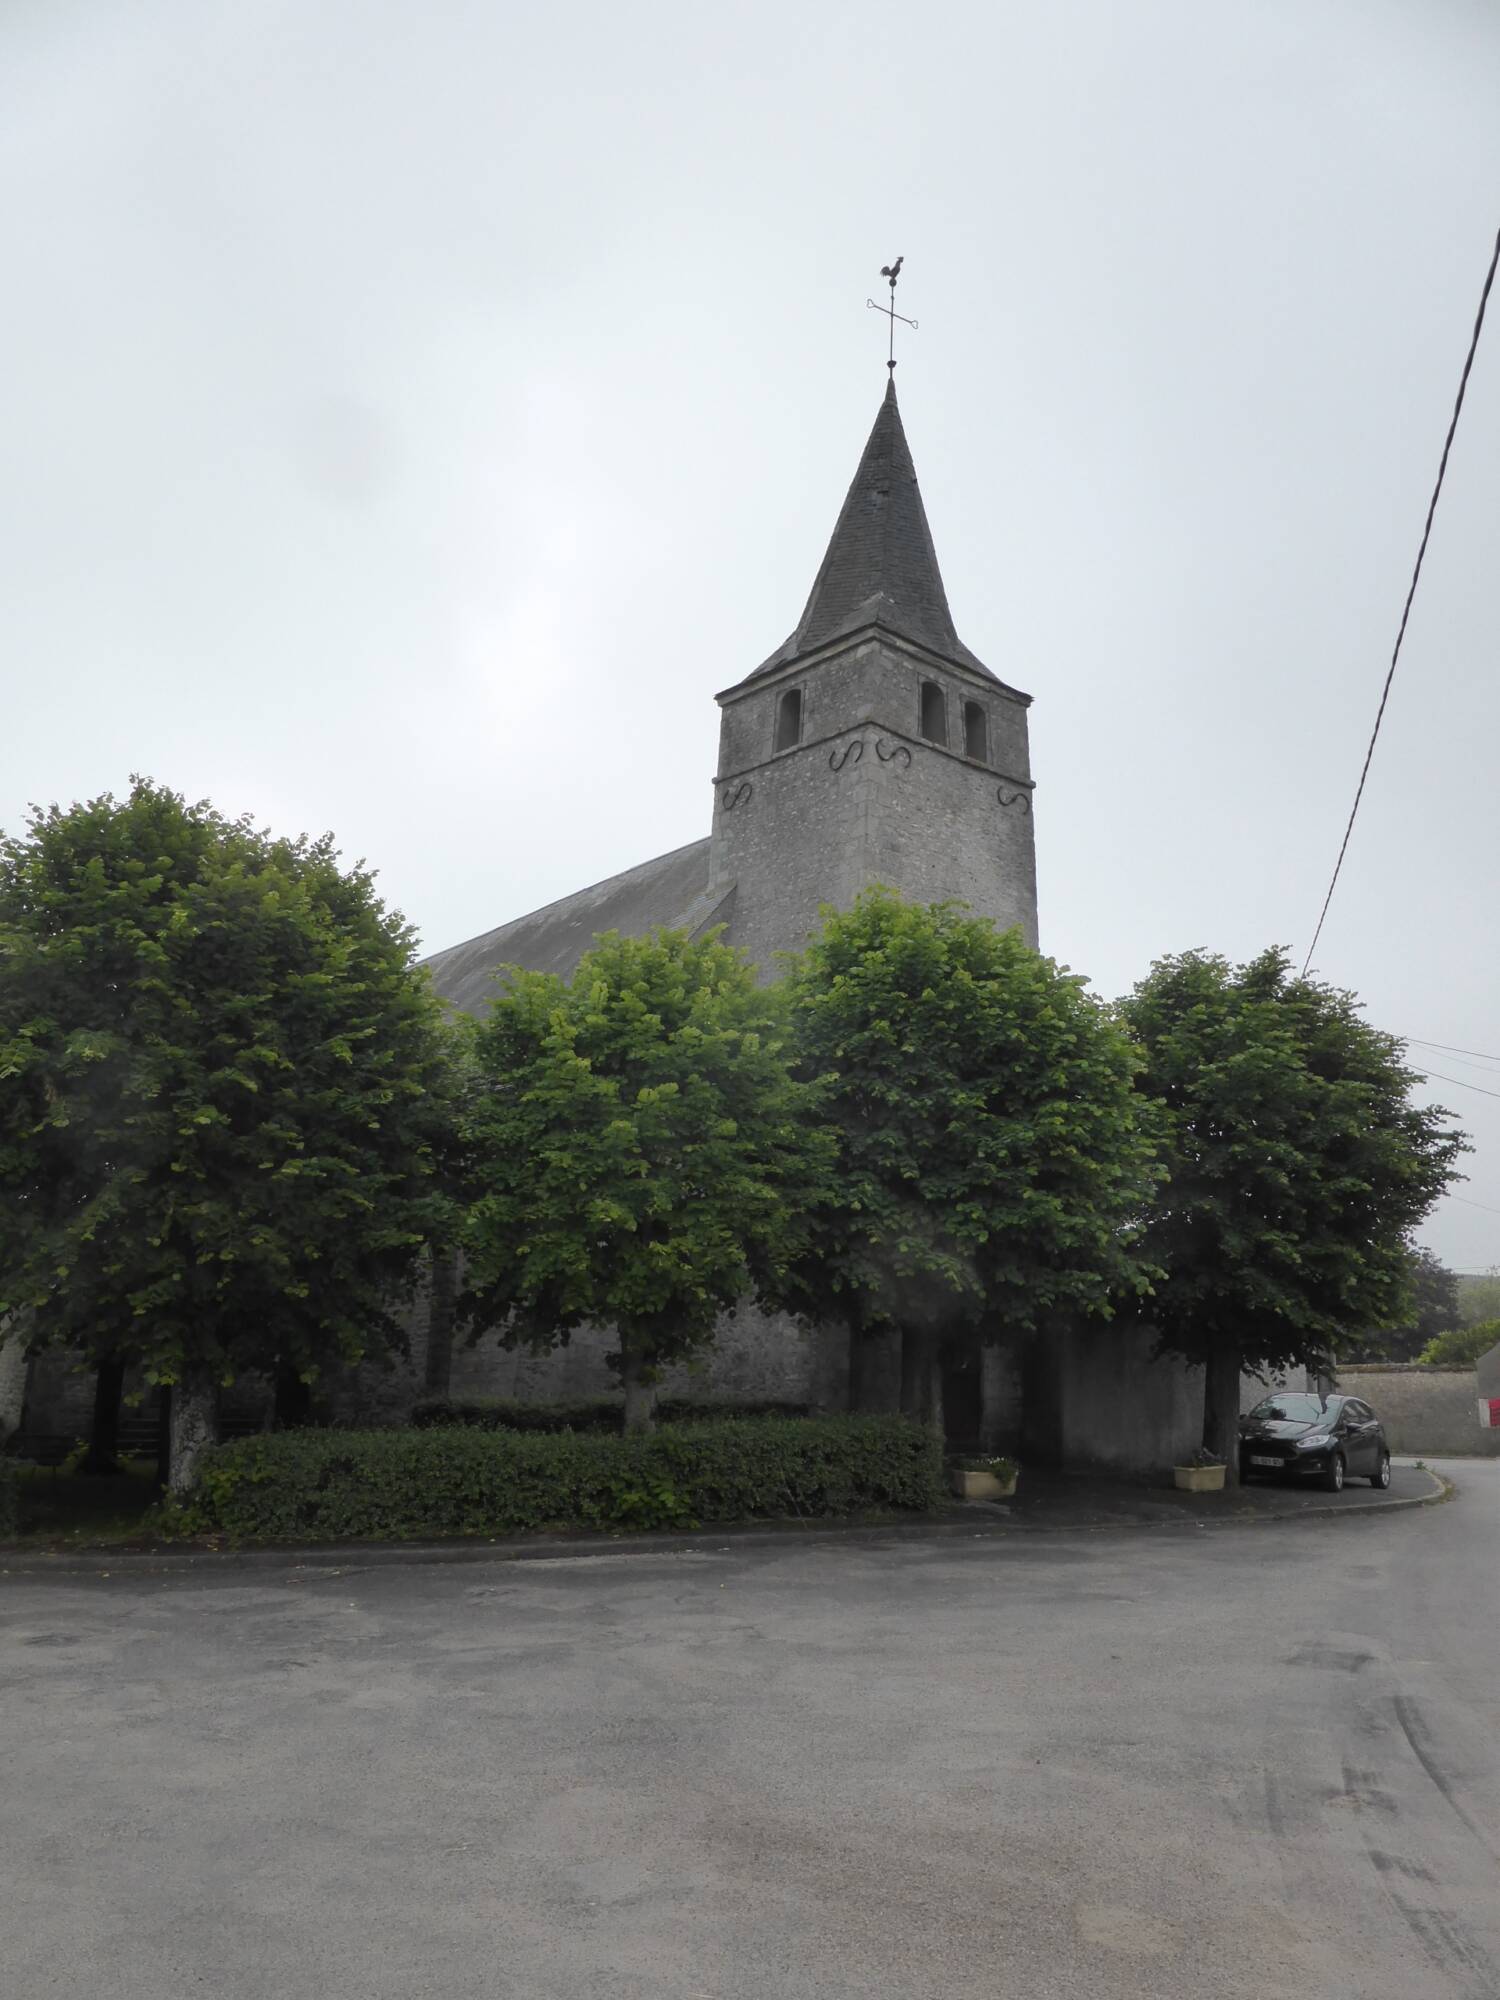 Allainville-en-Beauce (45) - Église Saint-Pierre